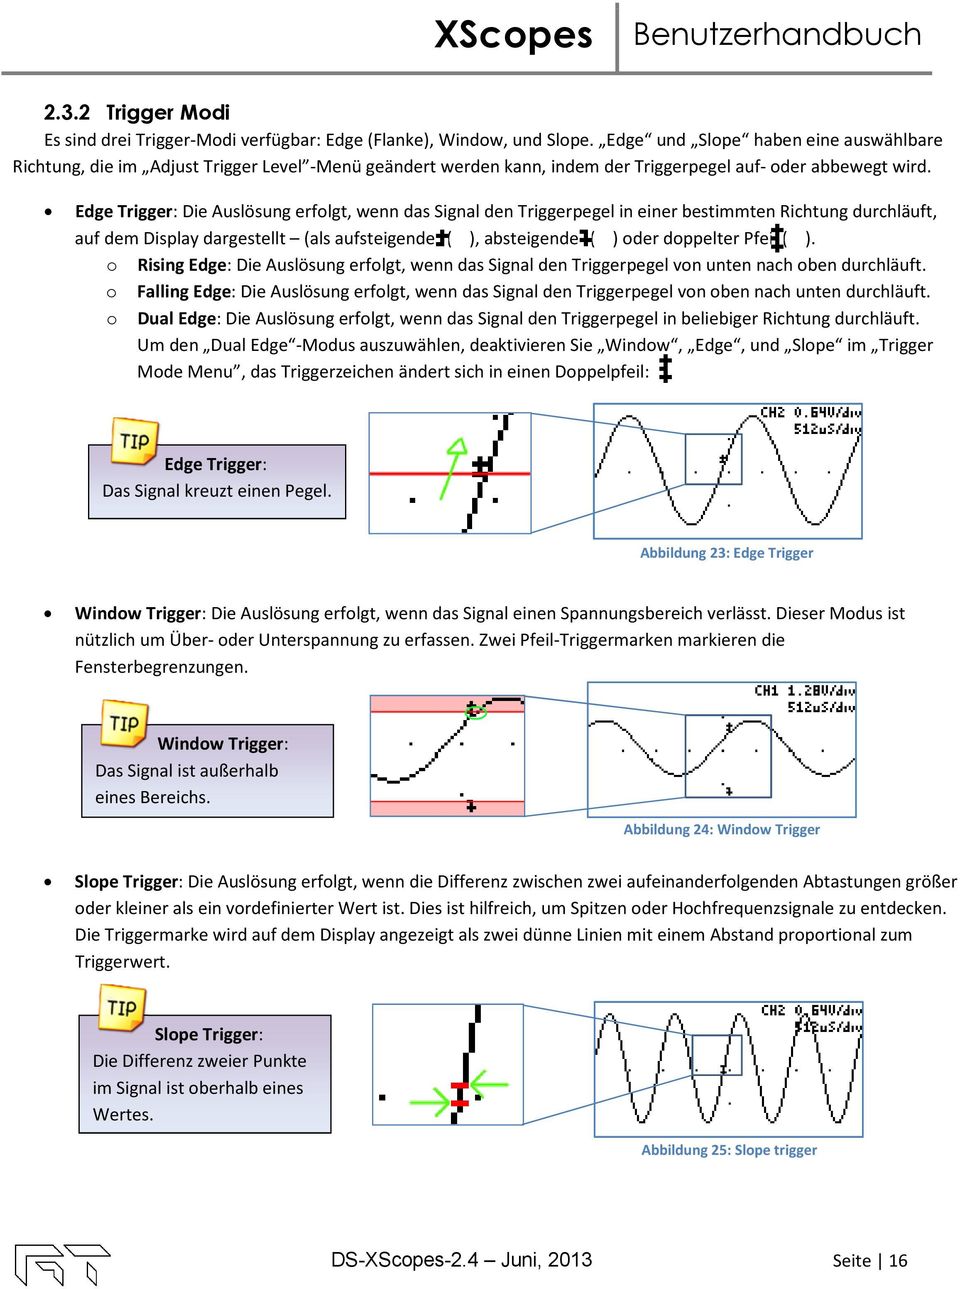 Edge Trigger: Die Auslösung erfolgt, wenn das Signal den Triggerpegel in einer bestimmten Richtung durchläuft, auf dem Display dargestellt (als aufsteigender ( ), absteigender ( ) oder doppelter